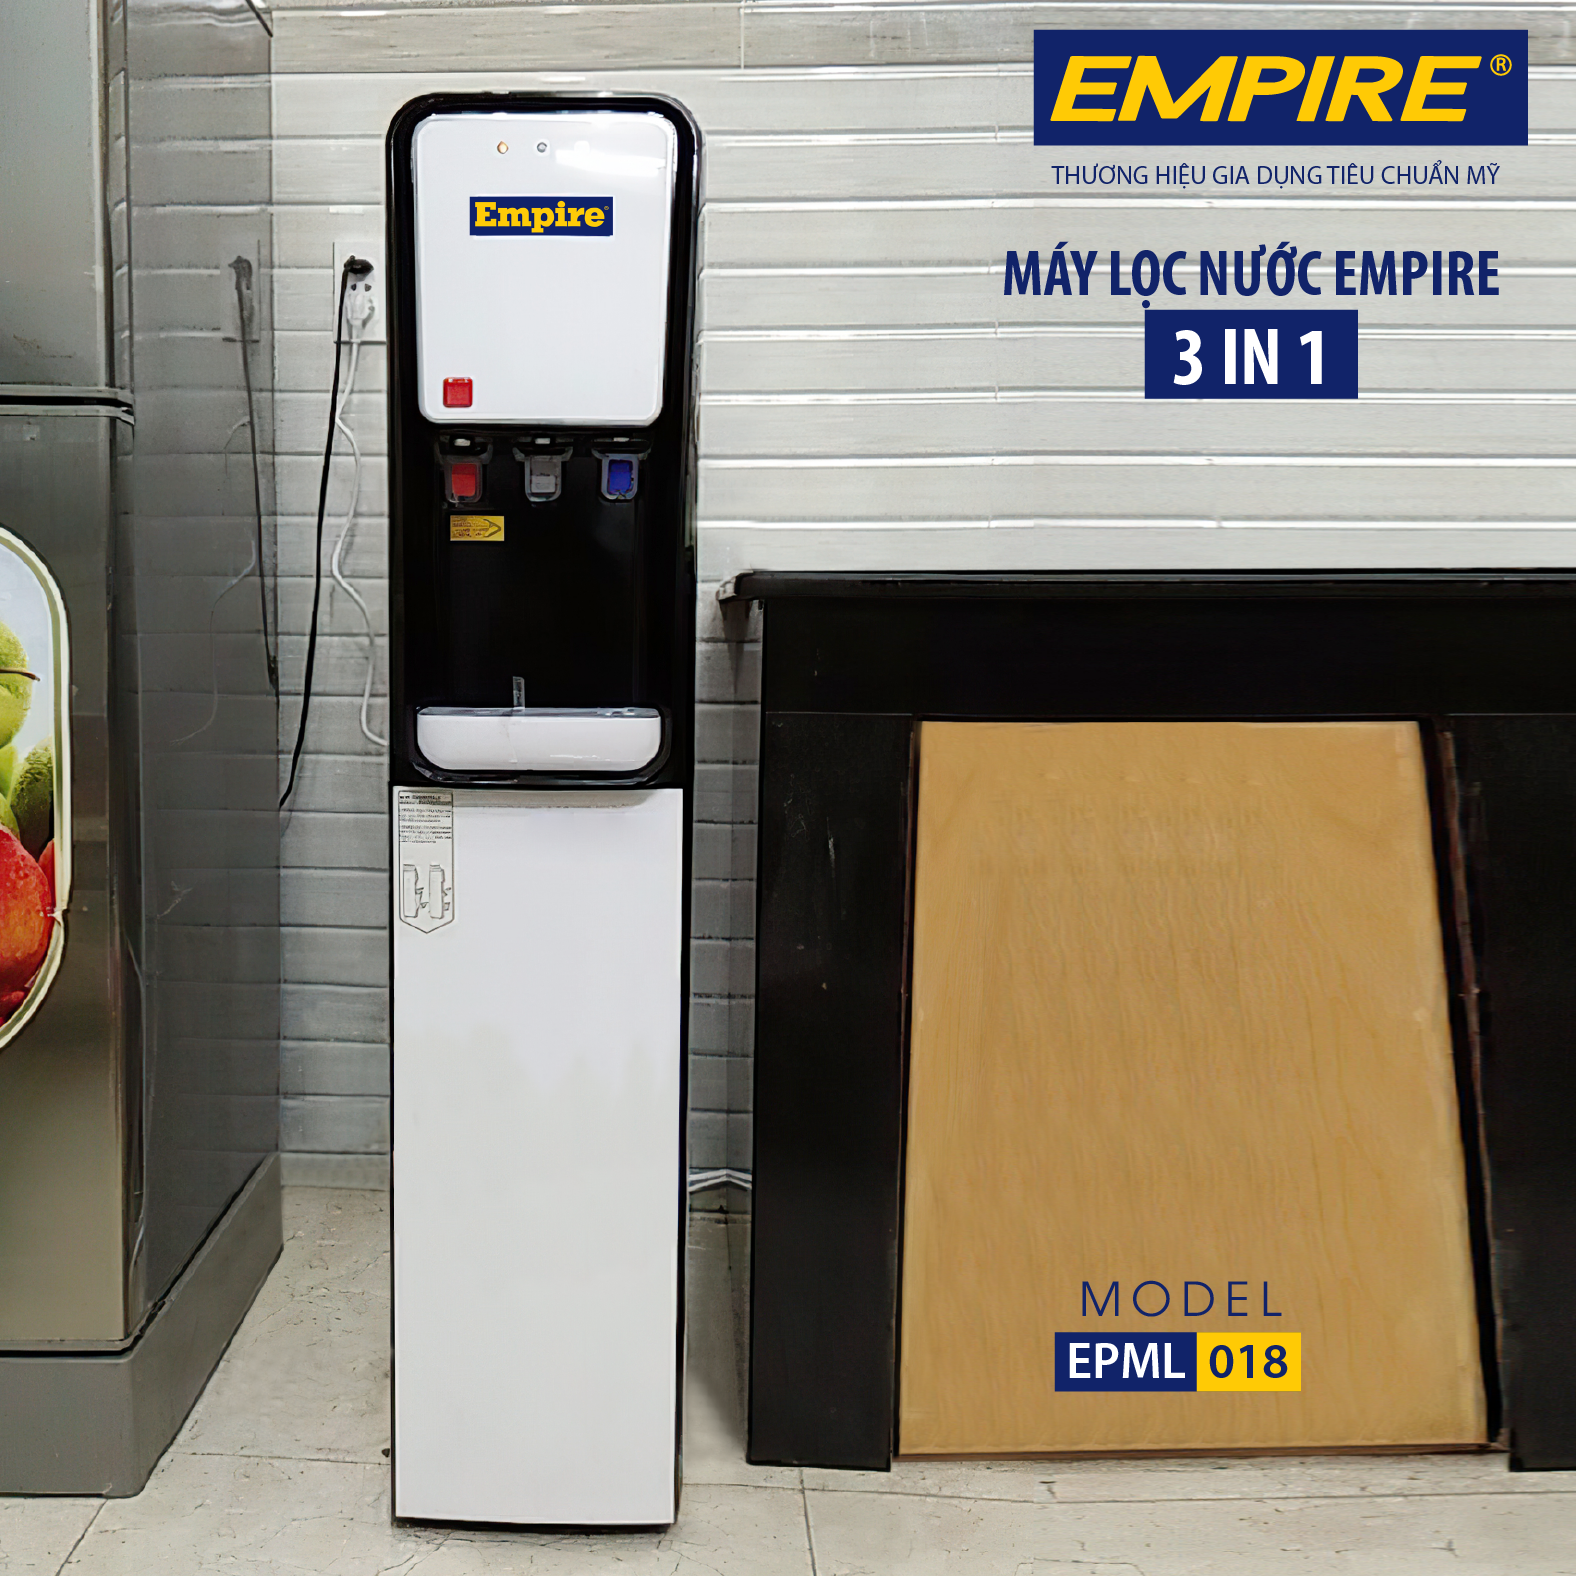 Cây nóng lạnh tích hợp máy lọc nước EMPIRE 3 trong 1 EPML018  - Hàng chính hãng.